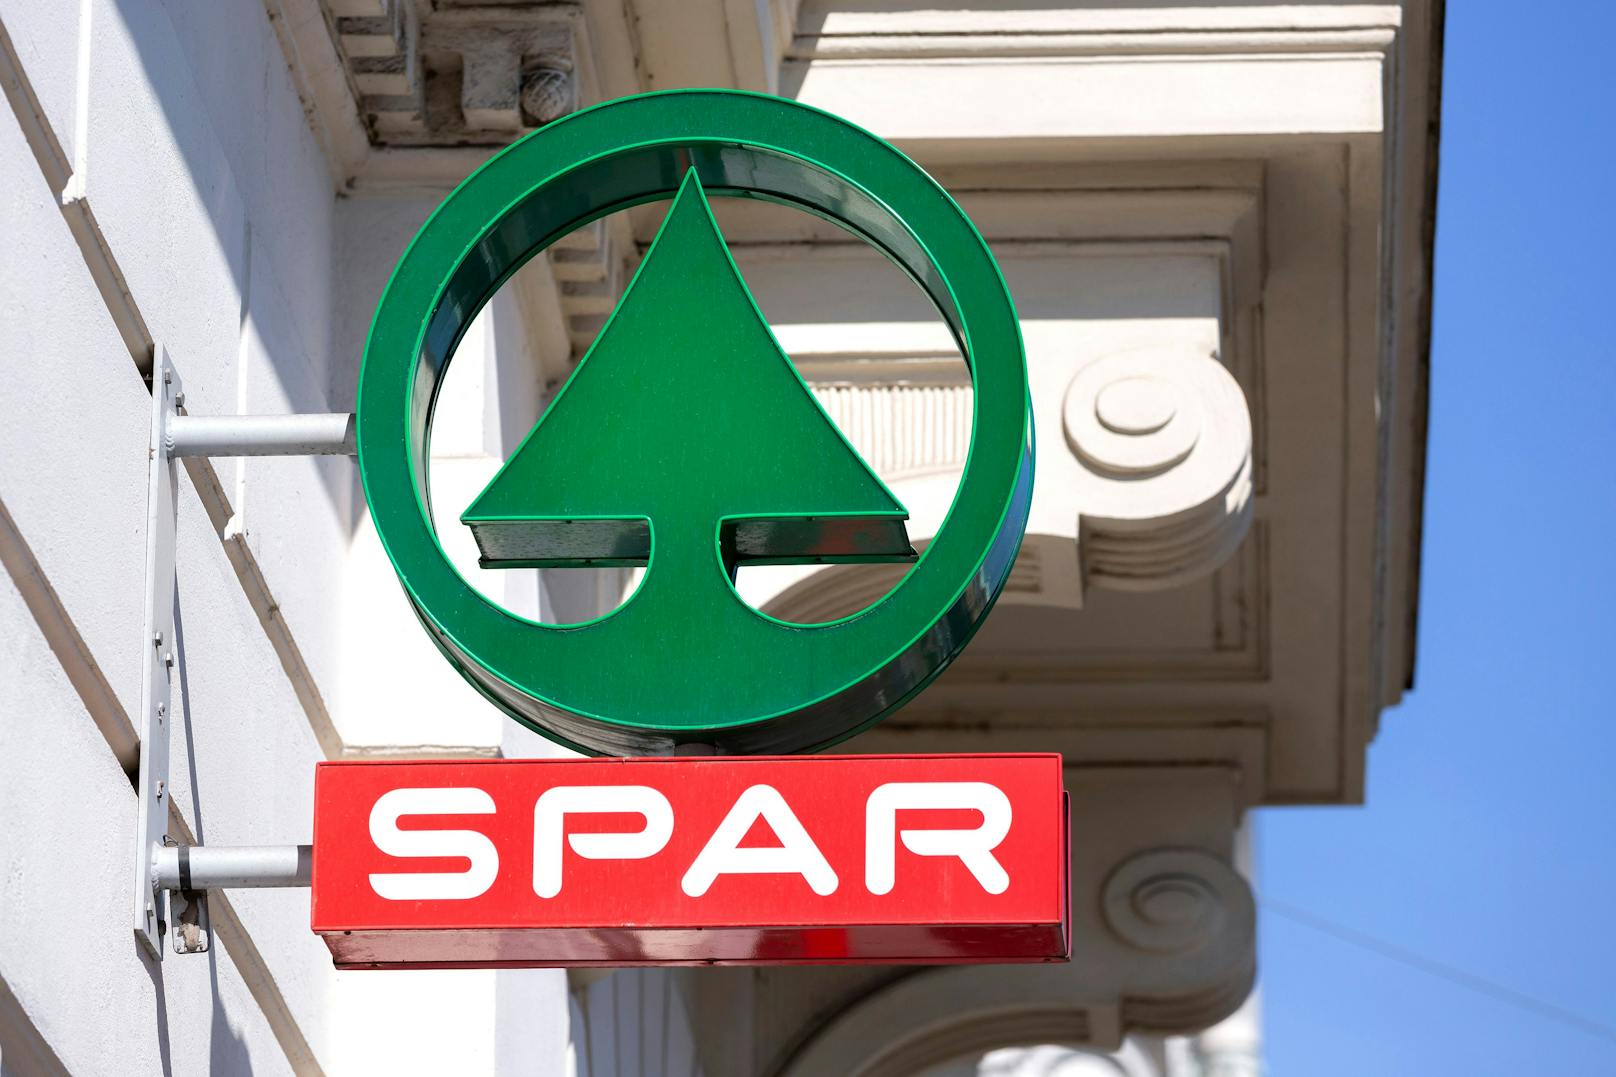 Auch bei Haustieren sei größte Sorgfalt geboten, so die österreichische SPAR Warenhandels-AG.